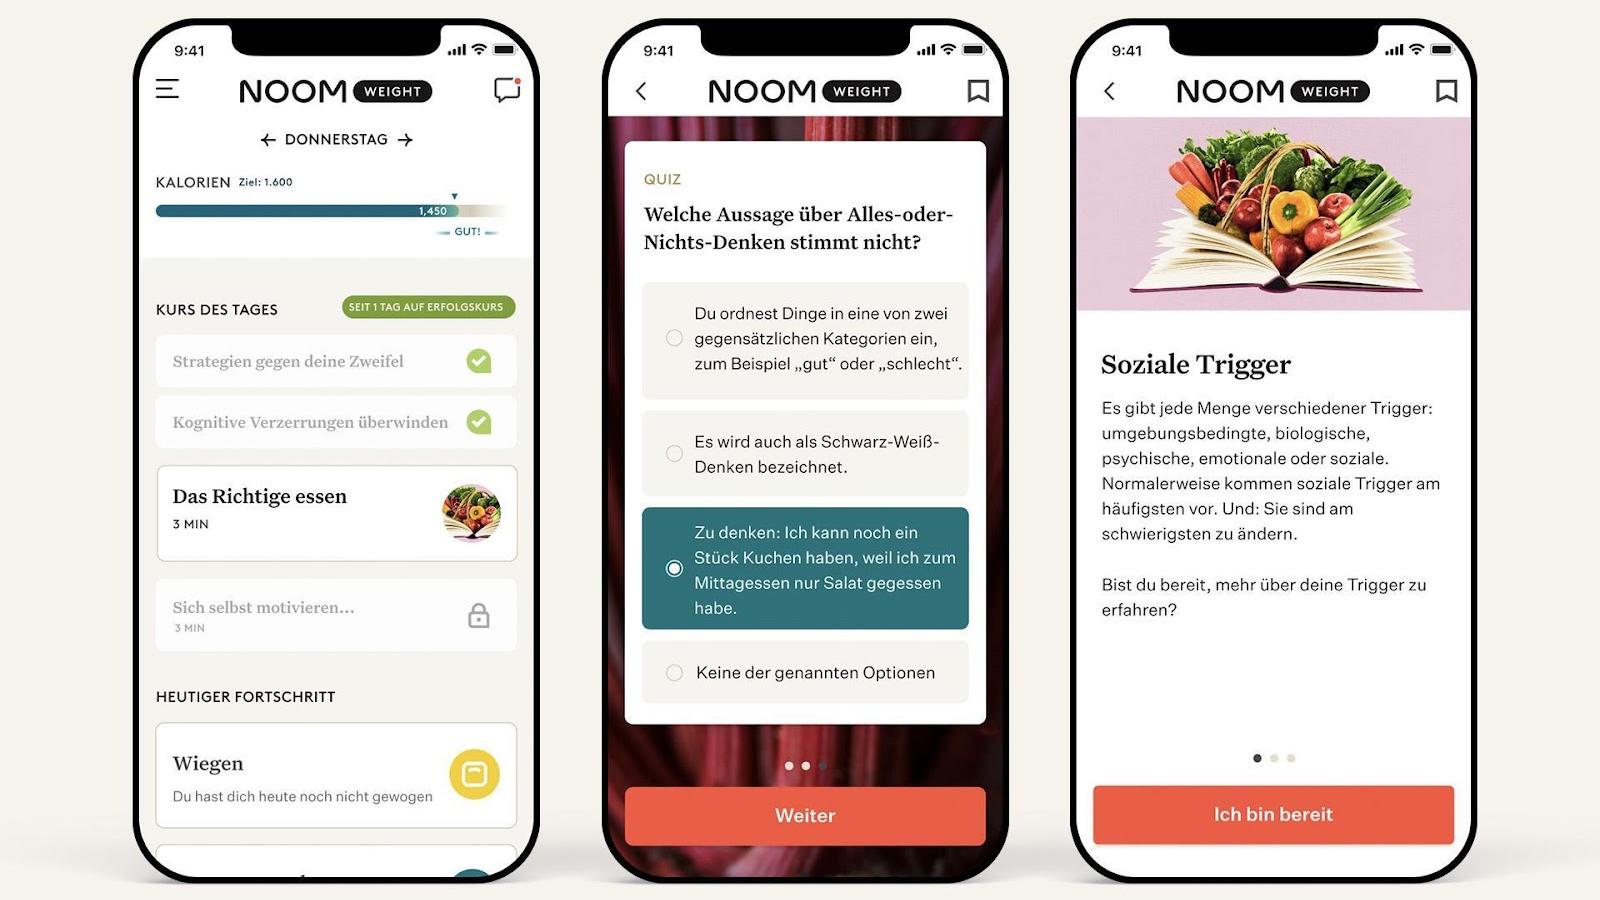 In der App bietet Noom unter anderem Rezepte, Artikel und Kontakt zu einem Coach.